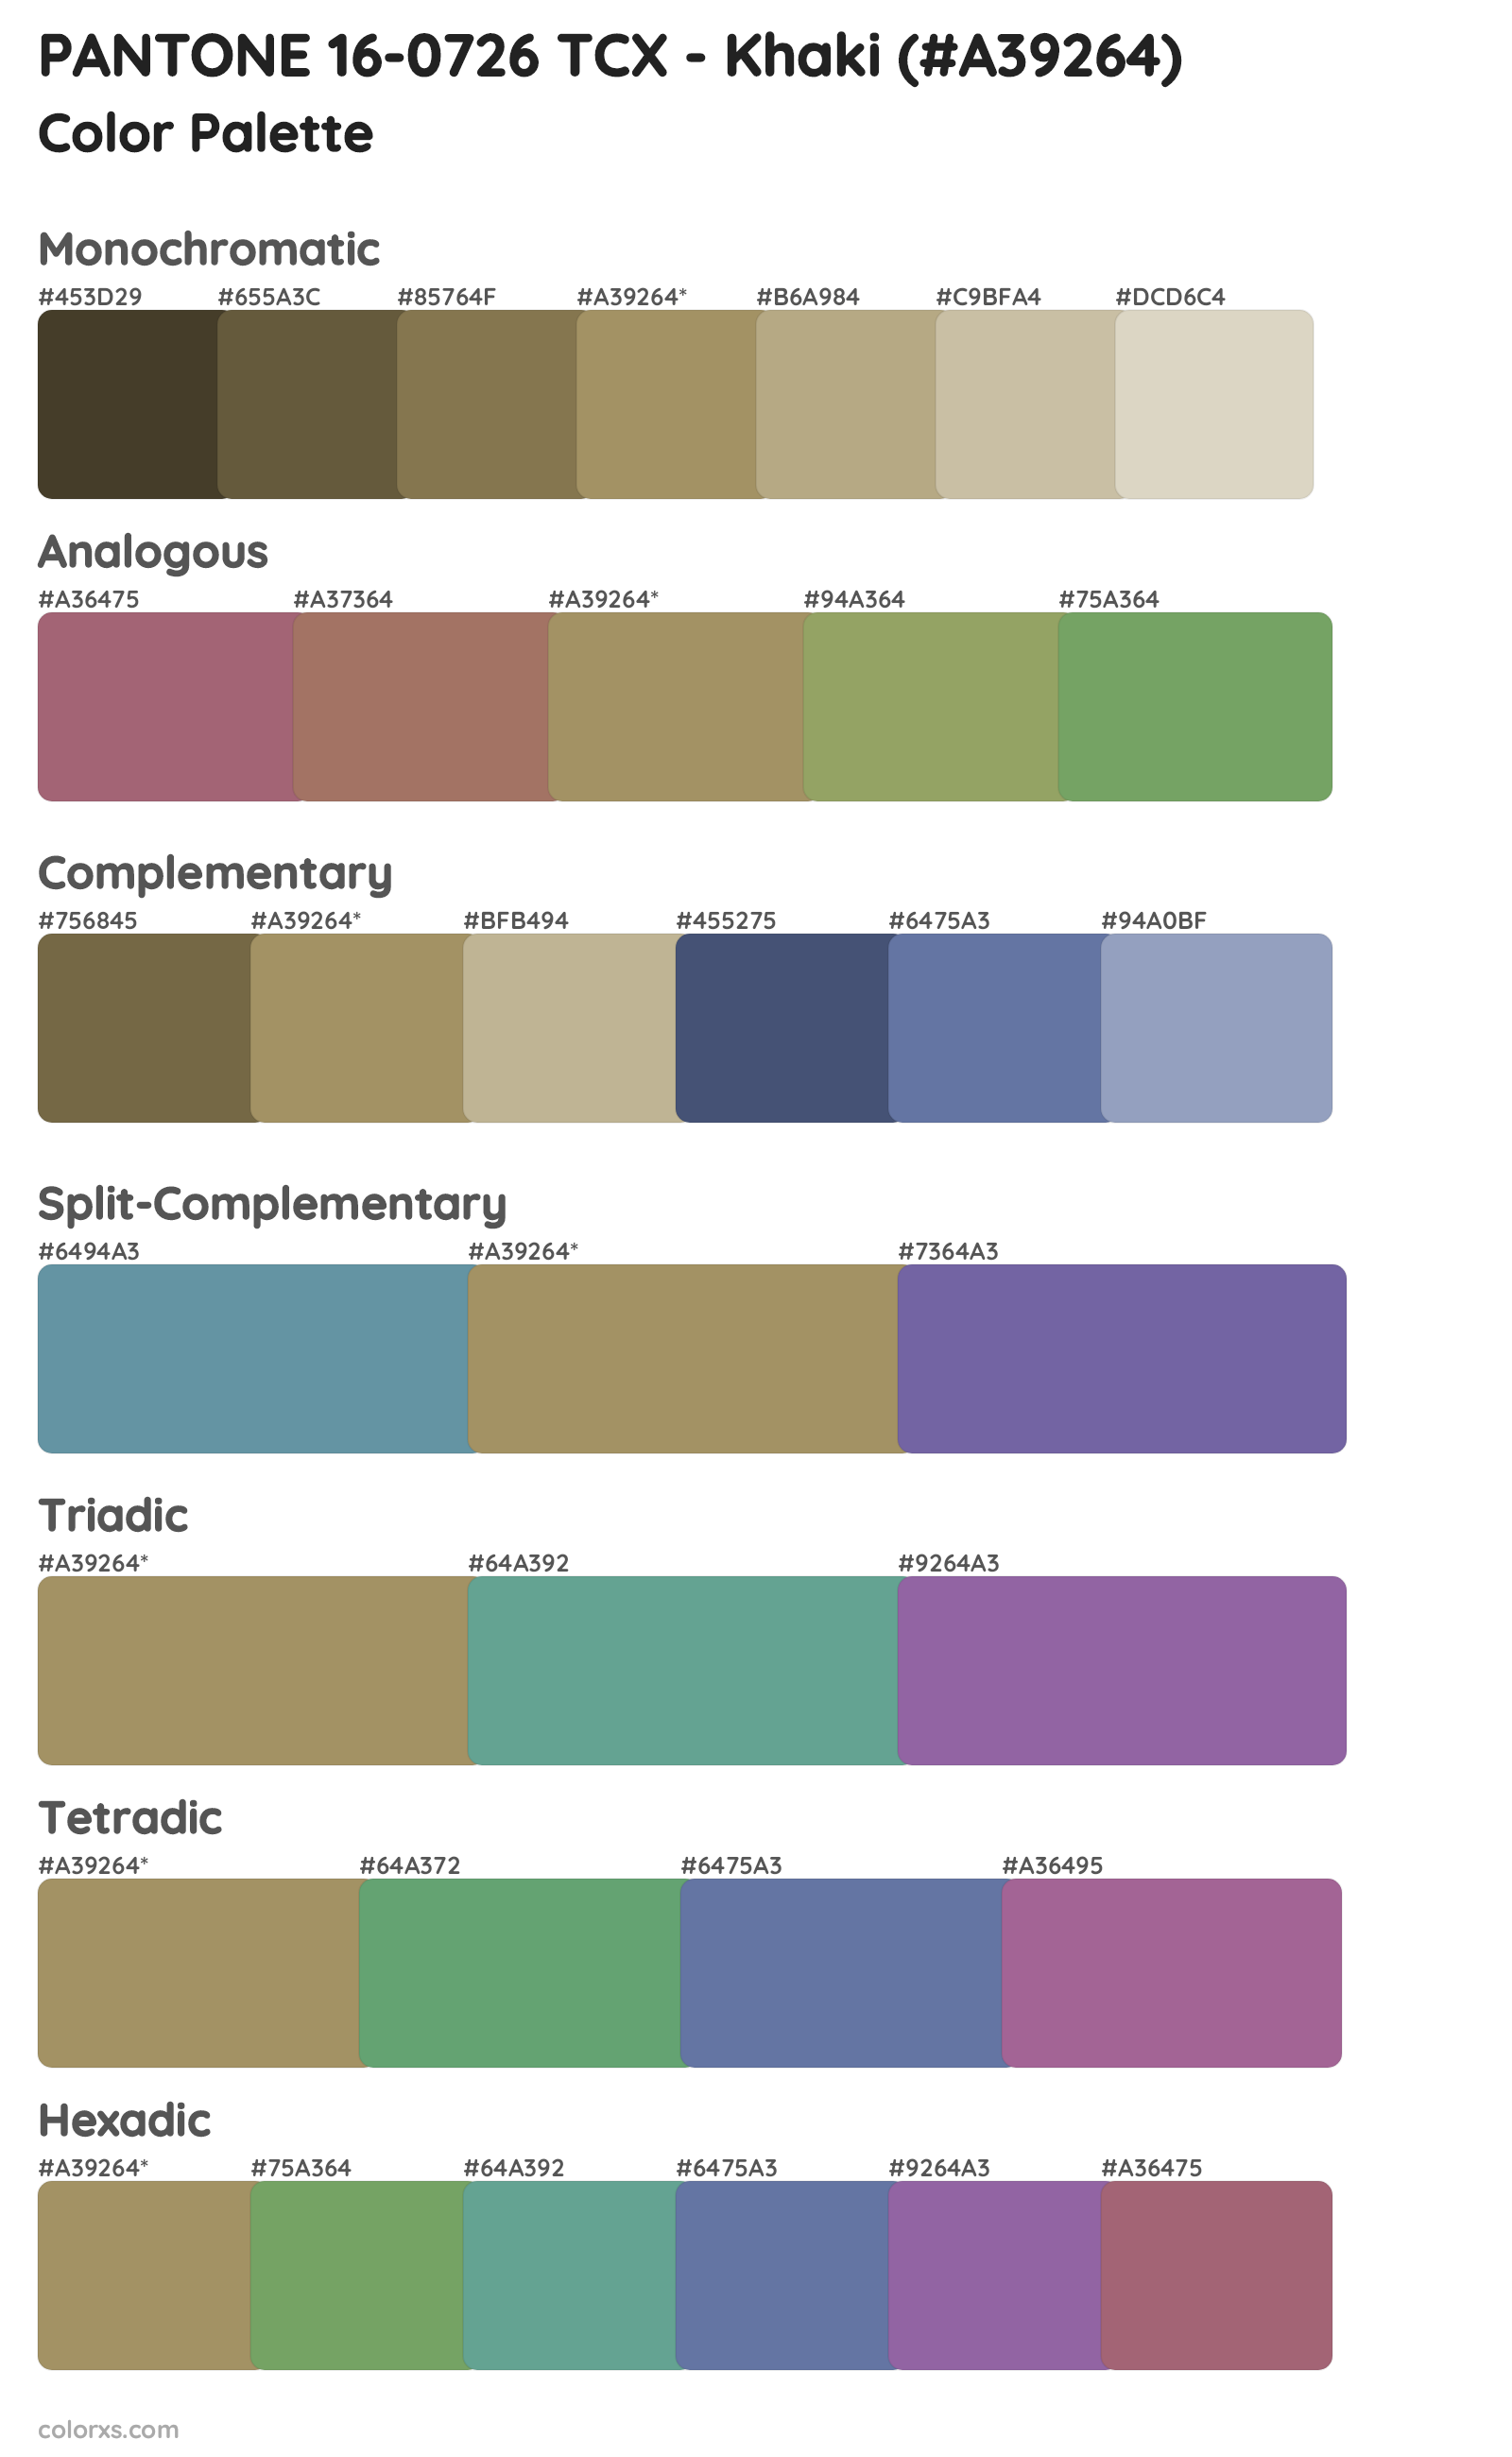 PANTONE 16-0726 TCX - Khaki Color Scheme Palettes